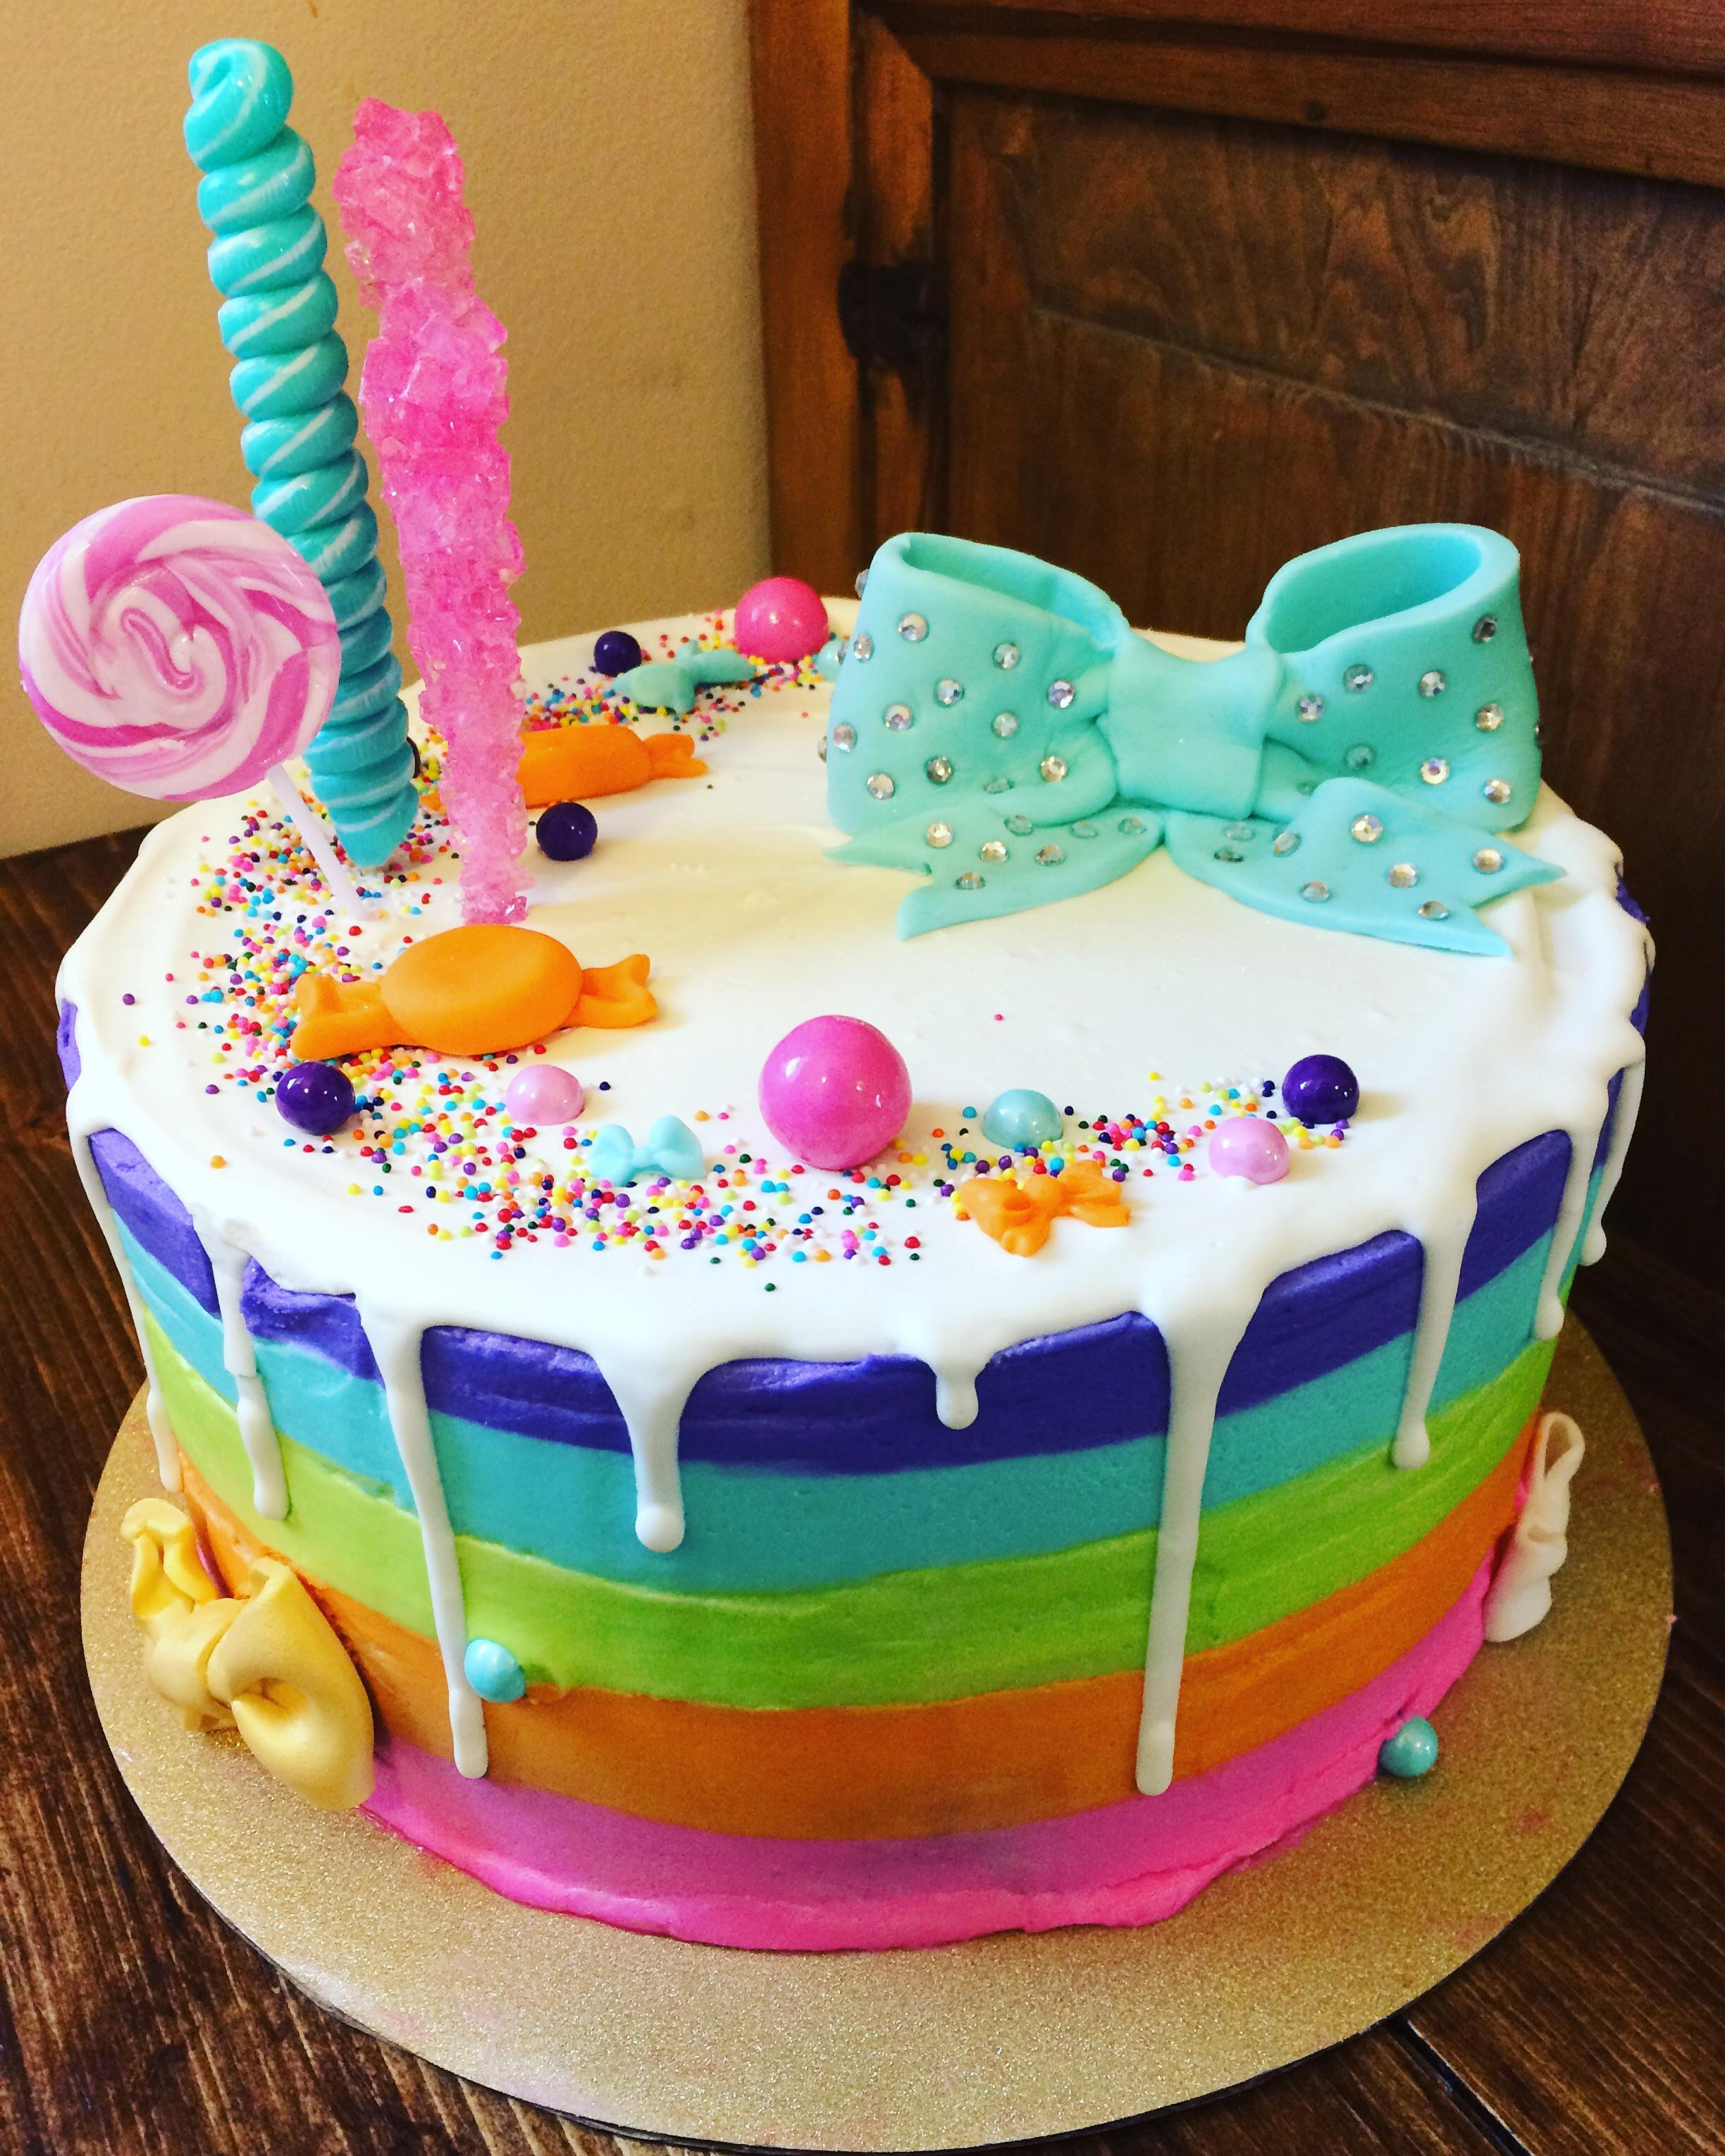 Best ideas about Jojo Siwa Birthday Cake
. Save or Pin I made a Jojo Siwa cake CAKEWIN Now.